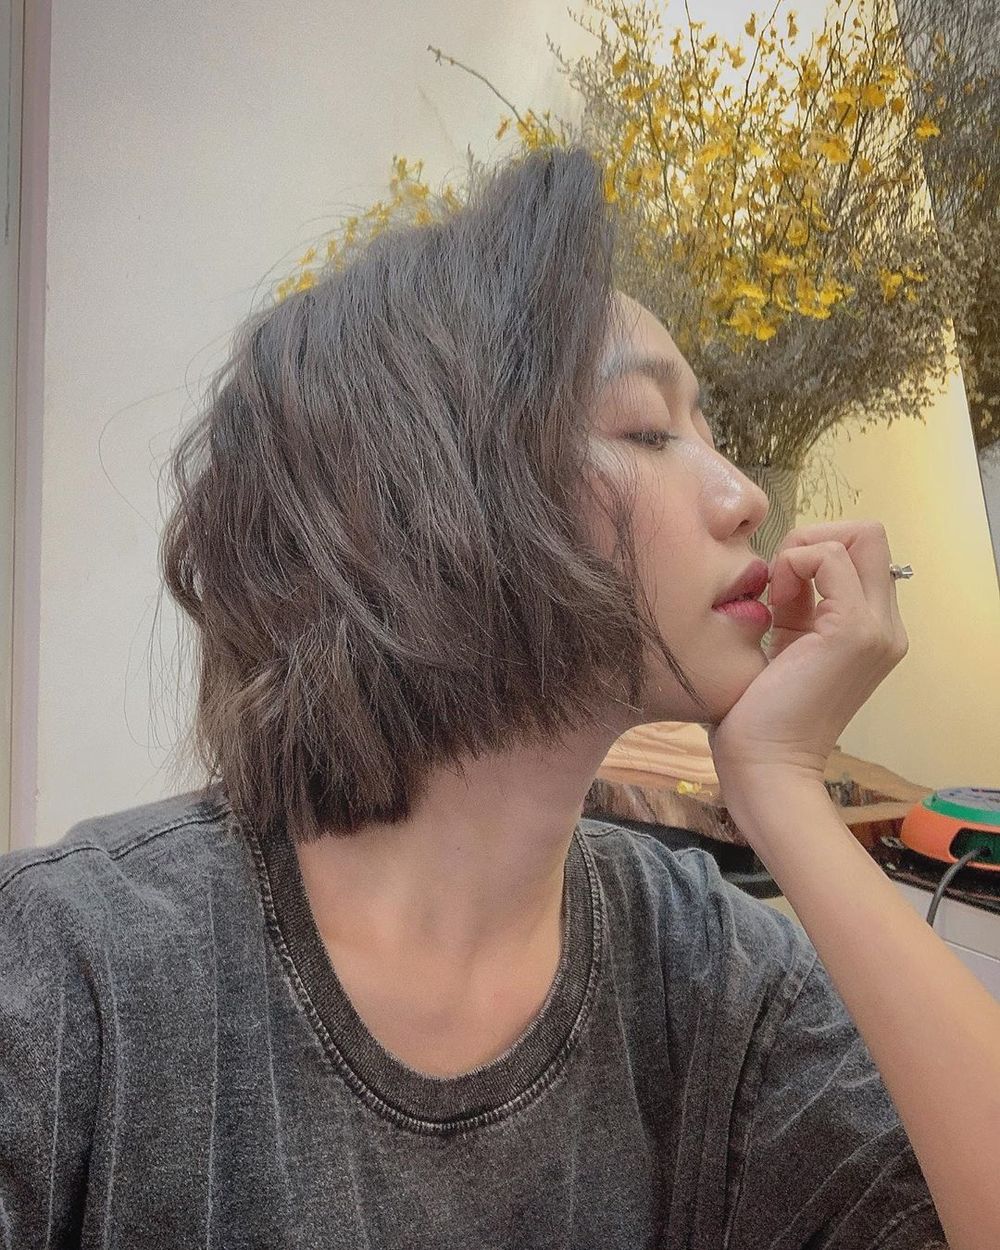 Sao Việt lên đời khi để tóc ngắn: Diệu Nhi muốn đẹp hơn Ngọc Trinh